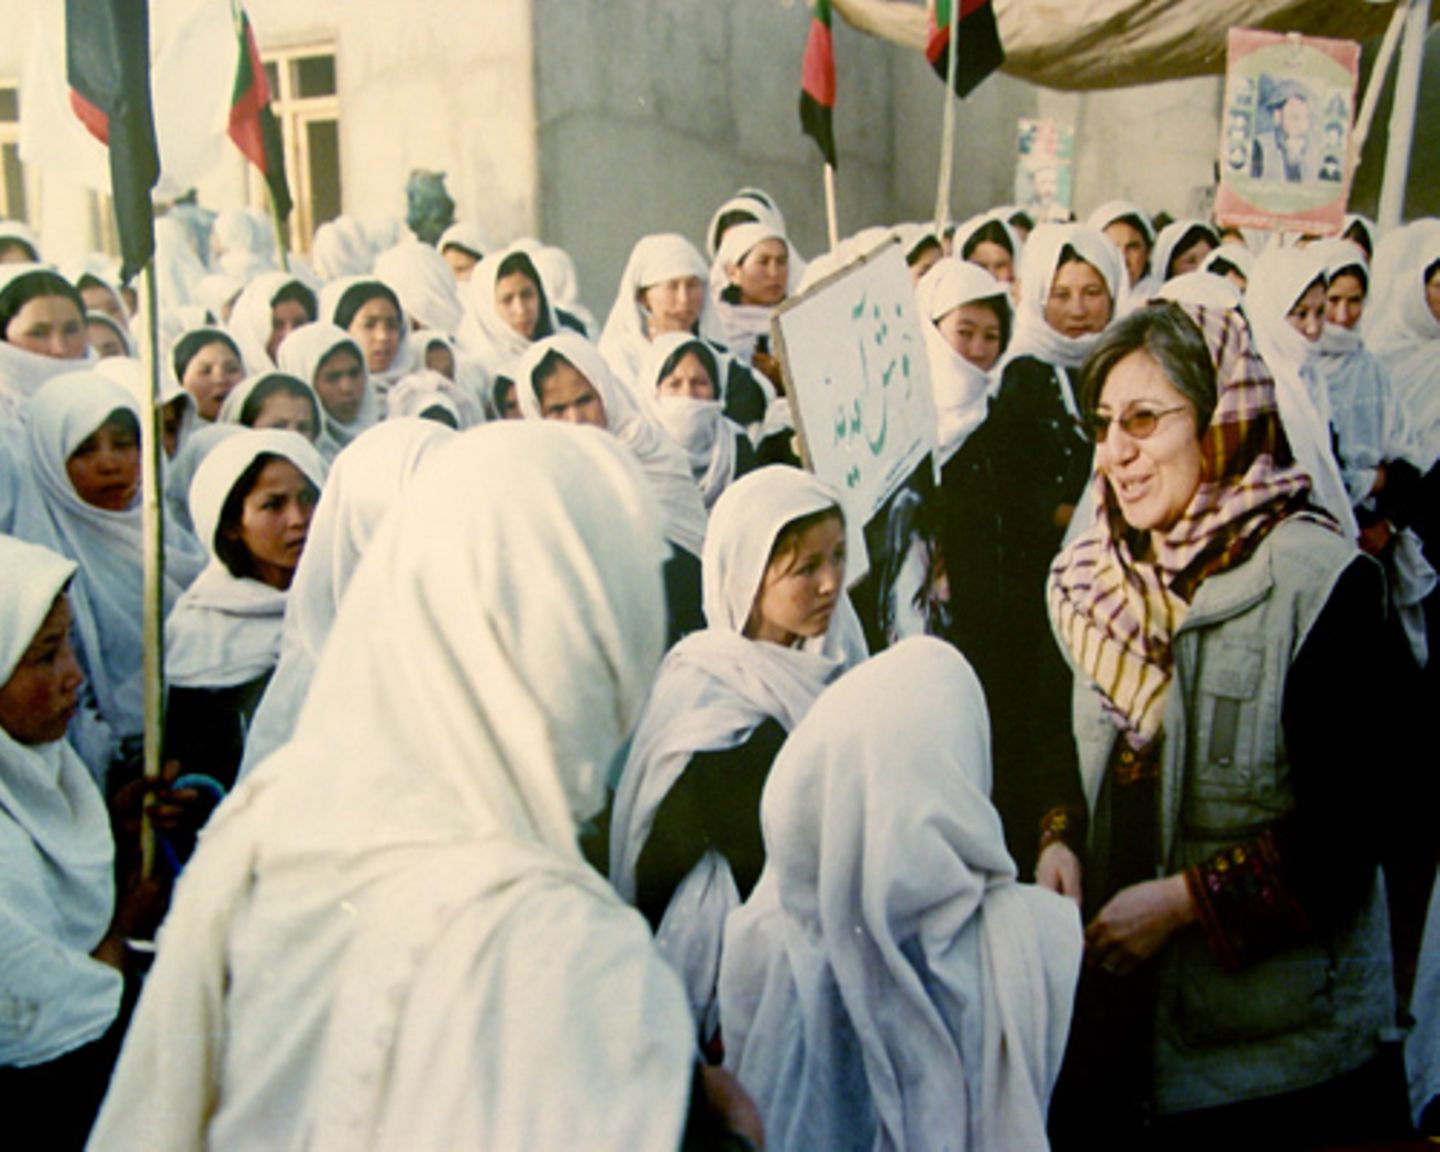 Was sie bis heute erreicht hat: 1989 gründete sie die Shuhada Organisation, die heute 15 Kliniken in Afghanistan betreibt. Rund 3,3 Millionen Menschen konnten so dank Sima Samar behandelt werden, vor allem Frauen und Kinder. Außerdem baute ihre Organisation 70 Schulen in Afghanistan auf. Das Foto zeigt sie 2003 beim Besuch einer Mädchenschule in der Daikundi-Provinz. Während der Taliban-Herrschaft waren die Shuhada-Schulen die einzigen, die Mädchen eine höhere Bildung ermöglichten. Viele unterrichteten heimlich im Untergrund.